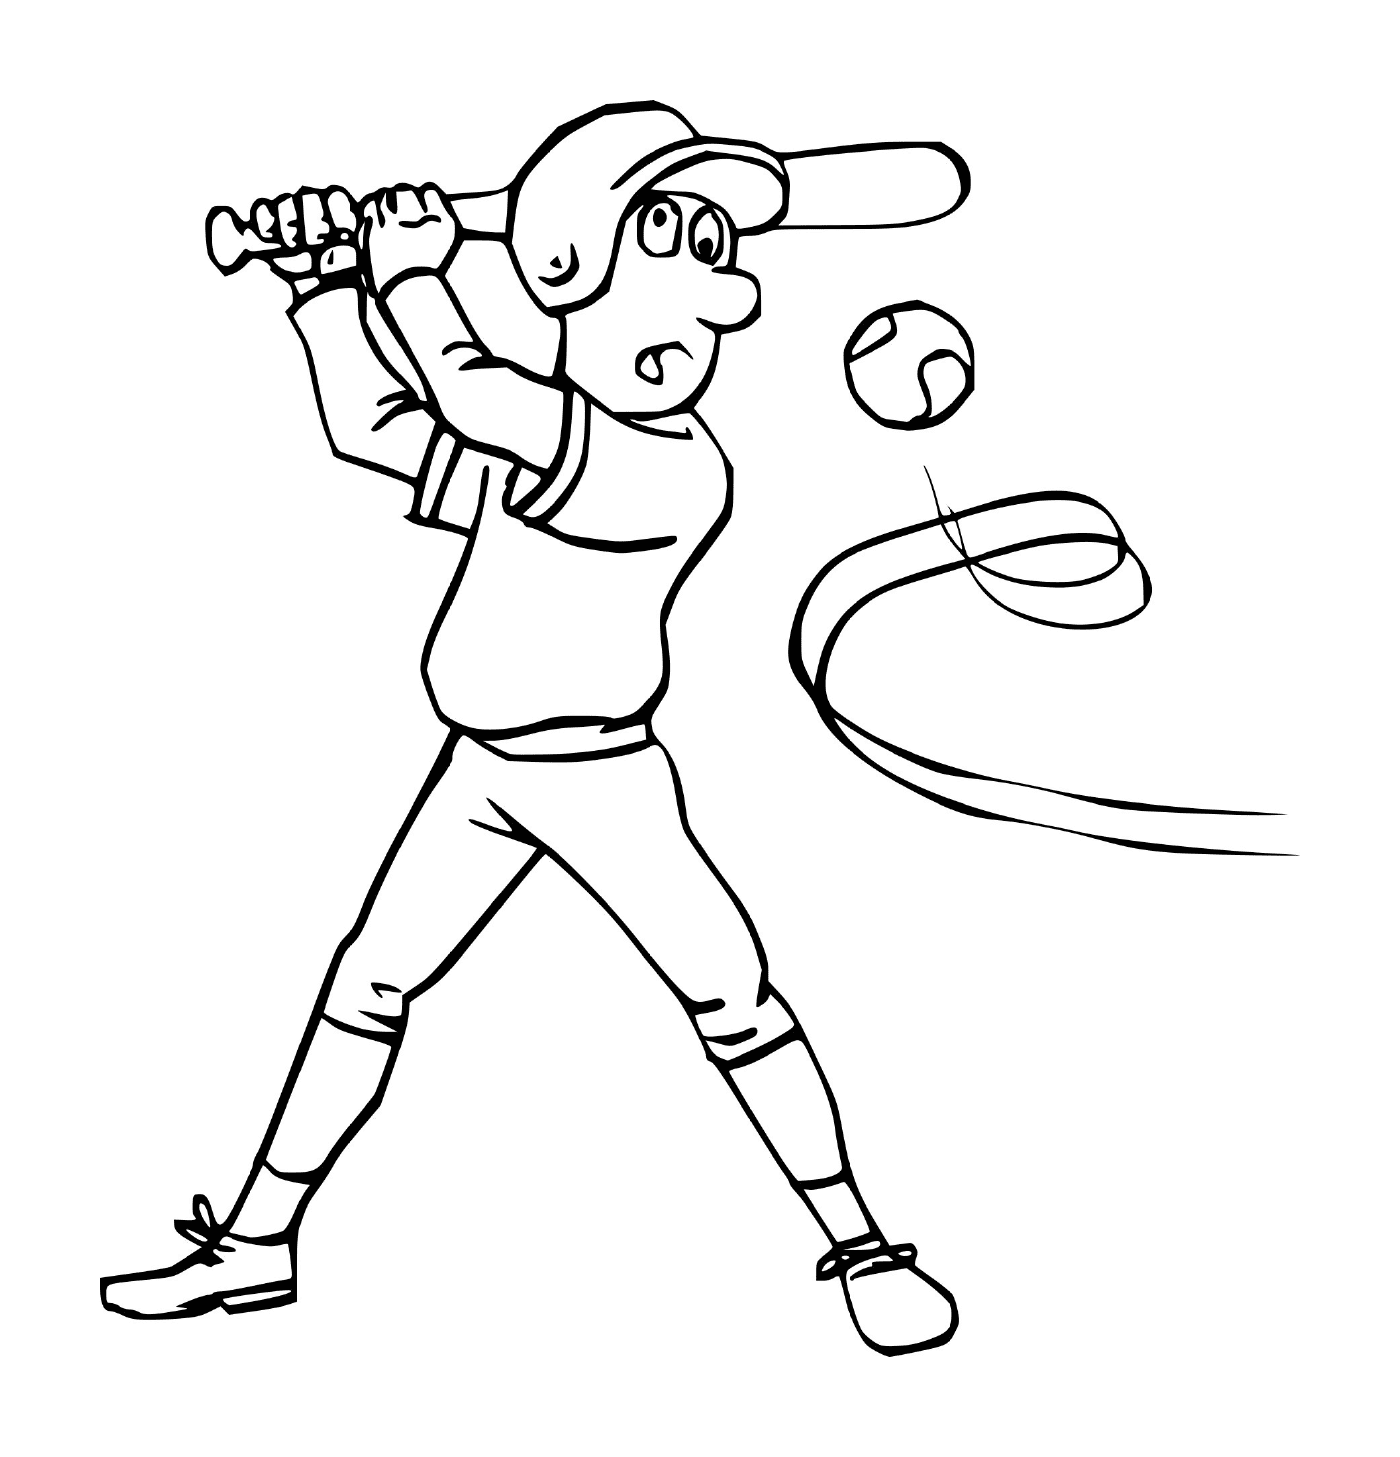  Esporte, beisebol, homem batendo uma bola 